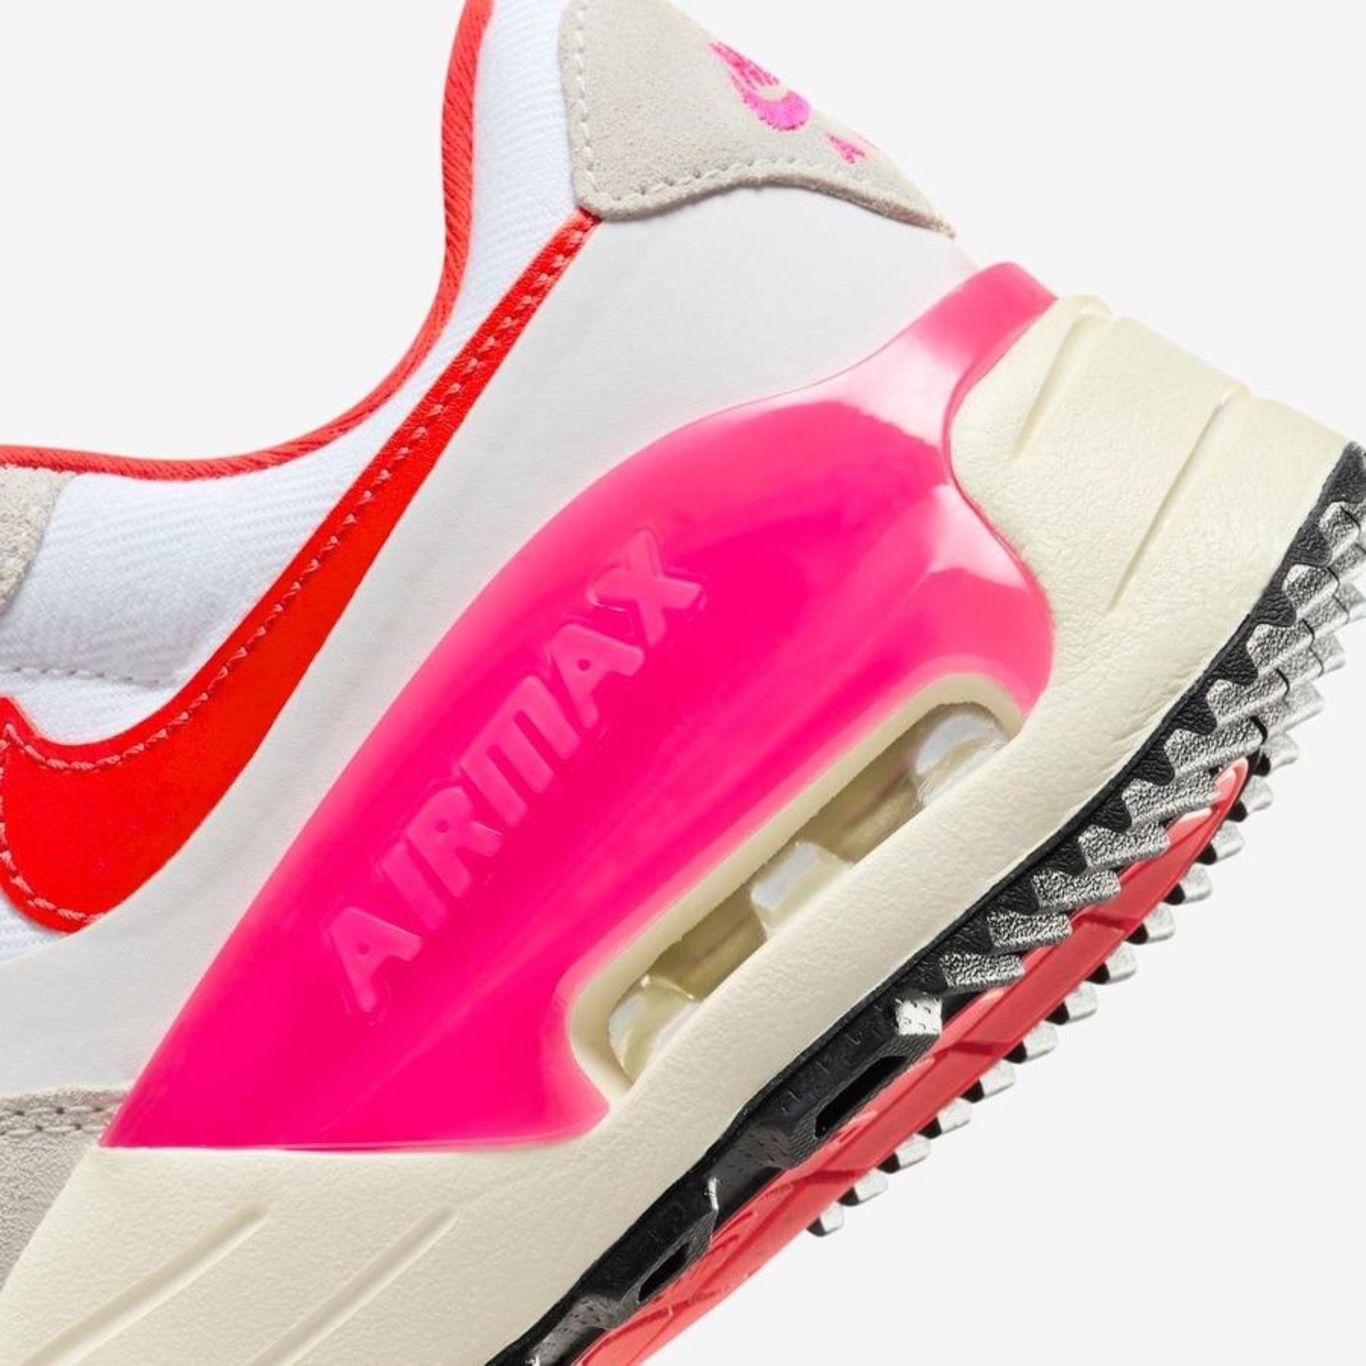 Tênis Nike Air Max Systm - Feminino em Promoção